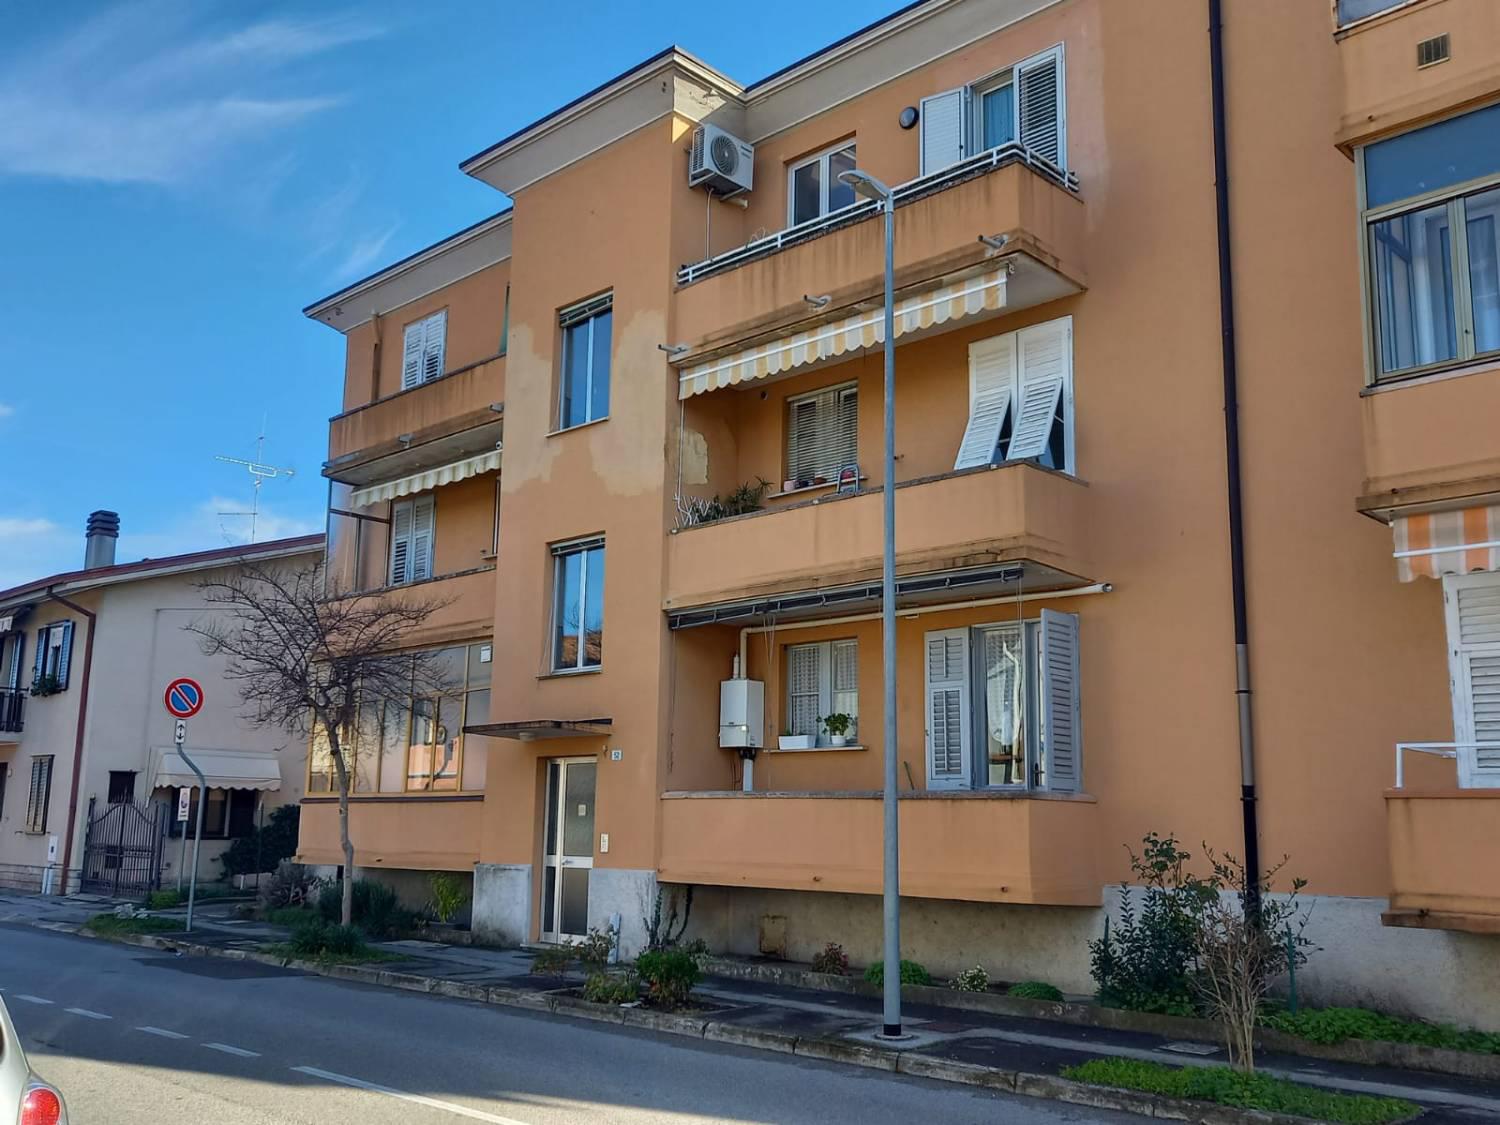 Appartamento in vendita a Romans d'Isonzo, 5 locali, prezzo € 49.000 | CambioCasa.it